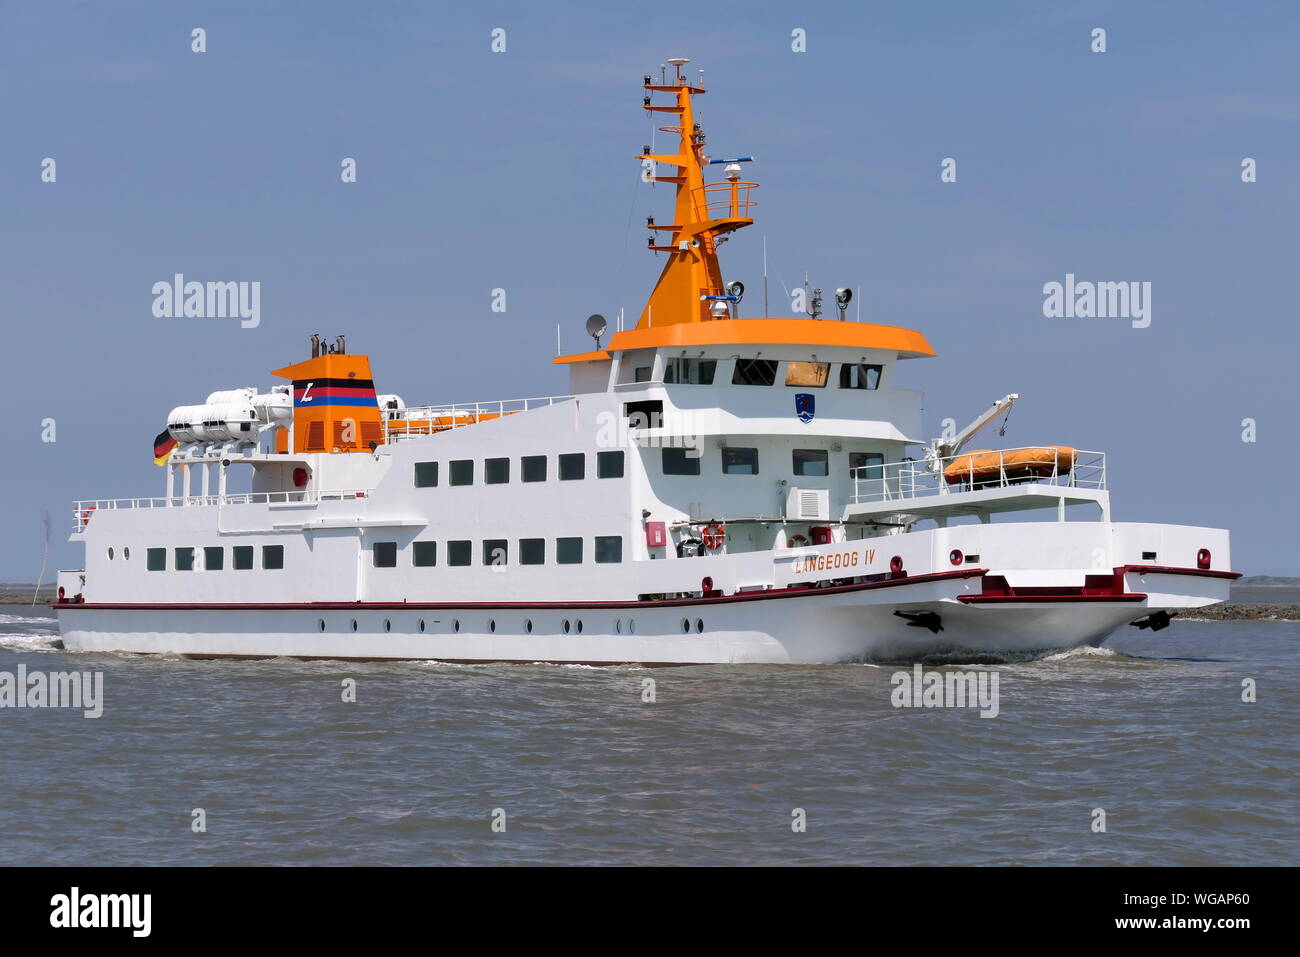 The passenger ship Langeoog IV arrives on June 23, 2019 the port of Bensersiel. Stock Photo